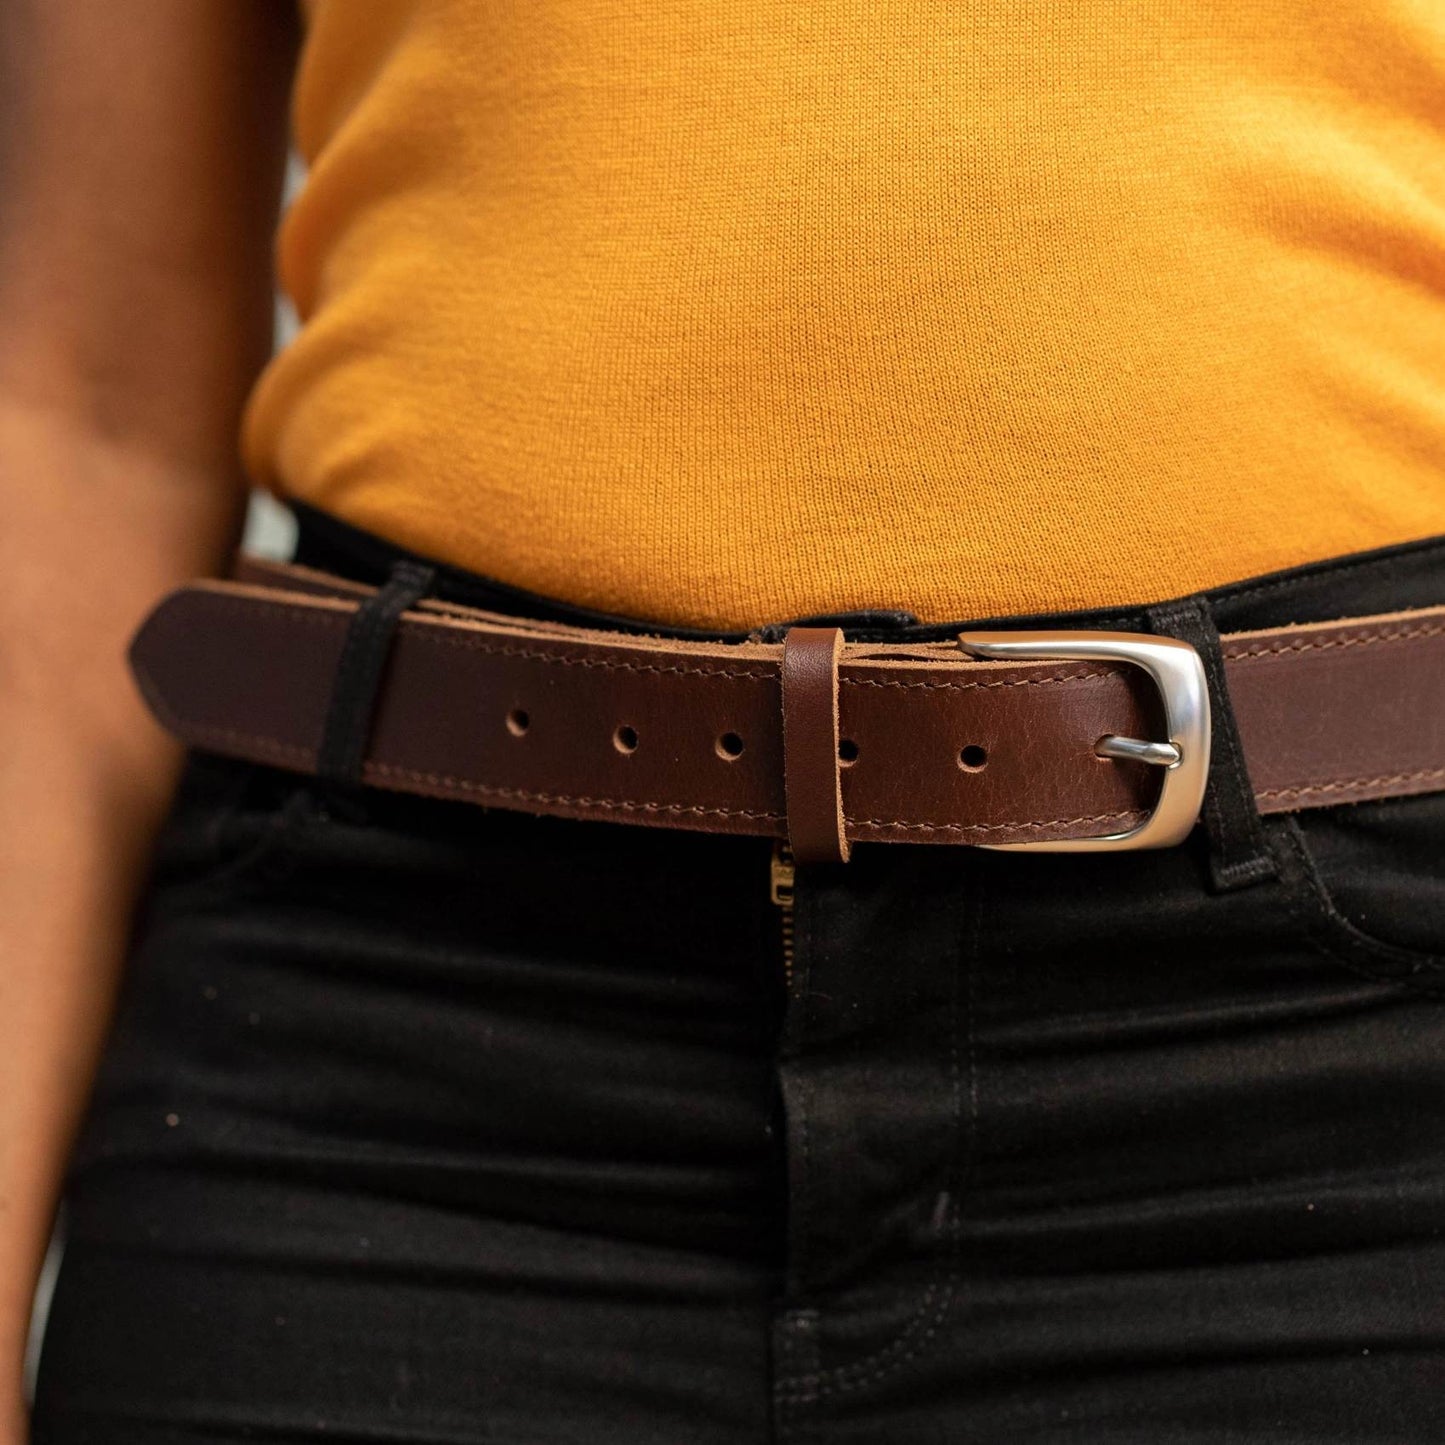 Office wear leather belts